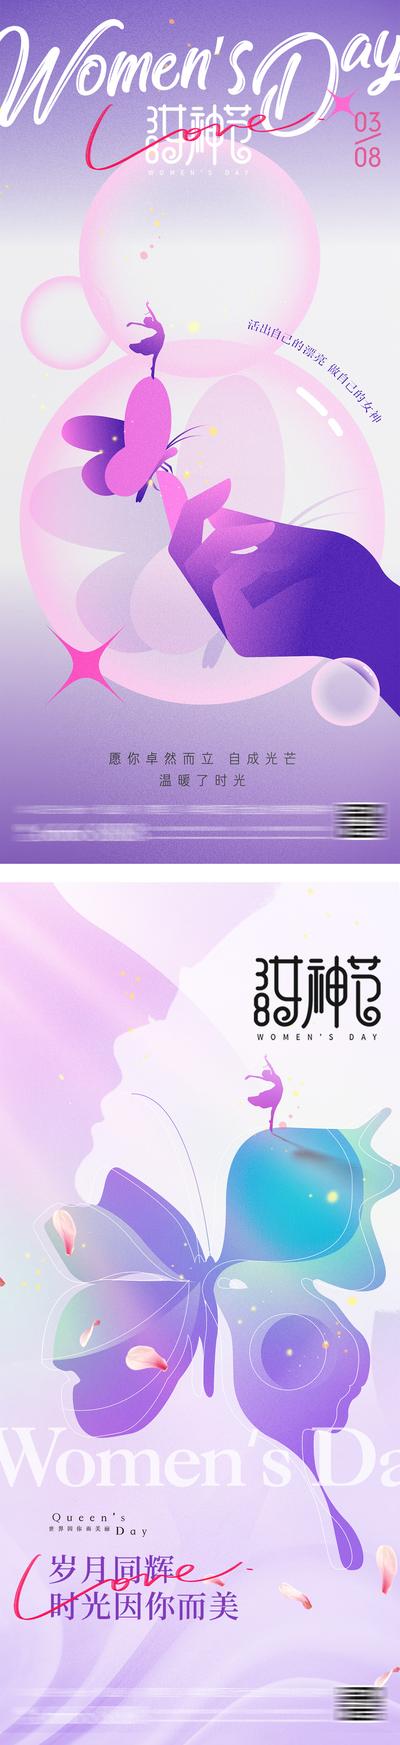 南门网 38女神节妇女节女生节海报